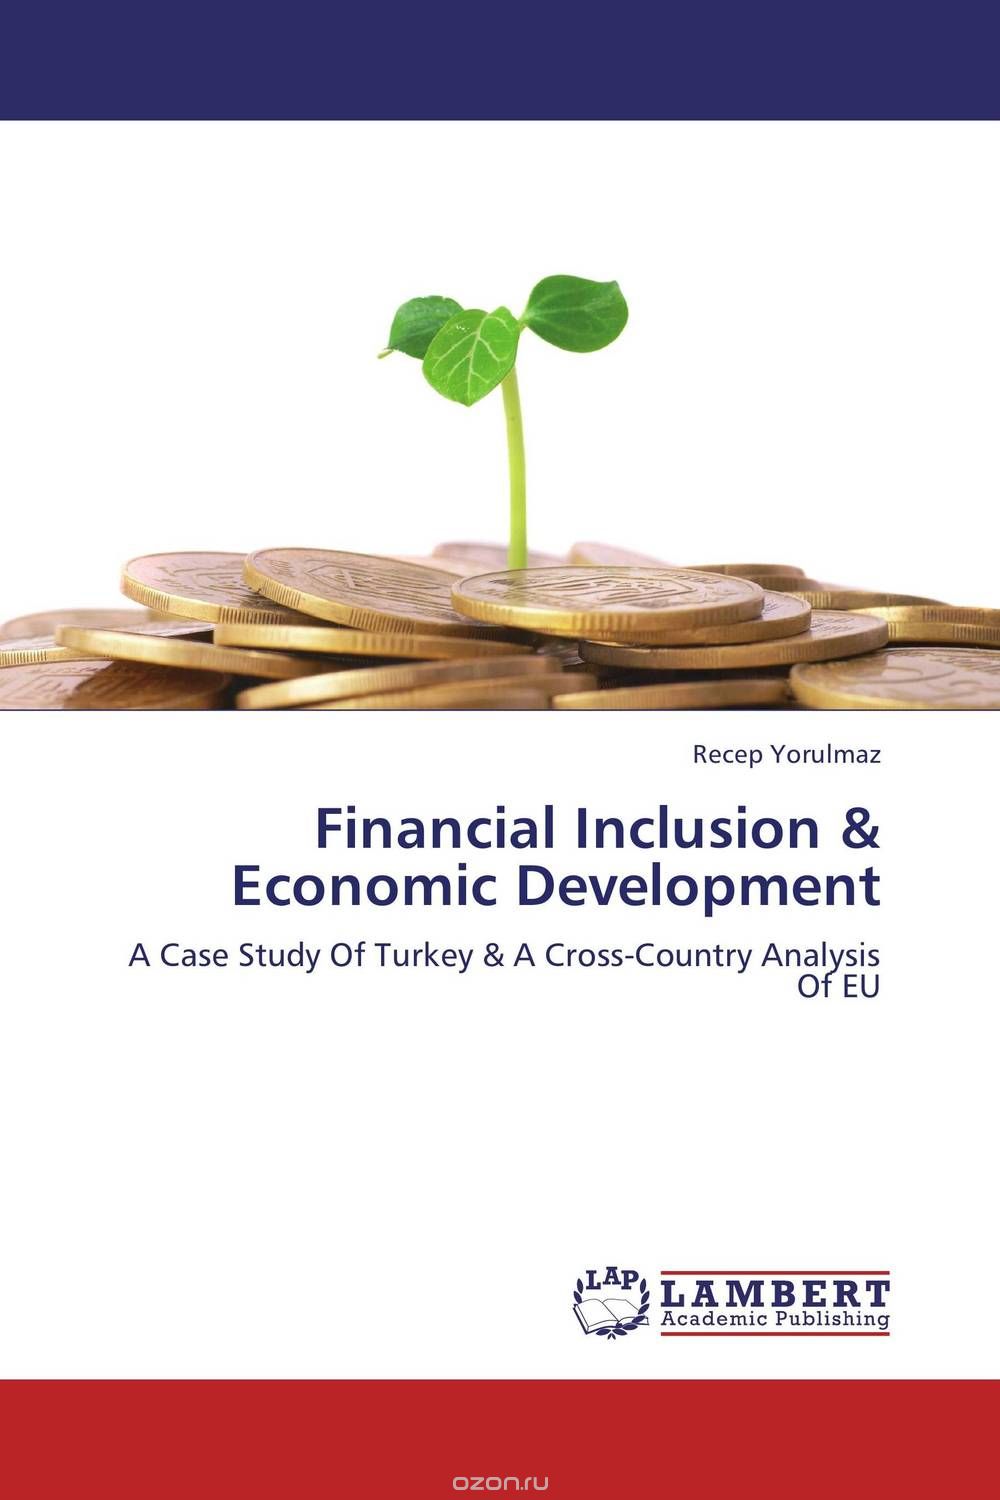 Скачать книгу "Financial Inclusion & Economic Development"